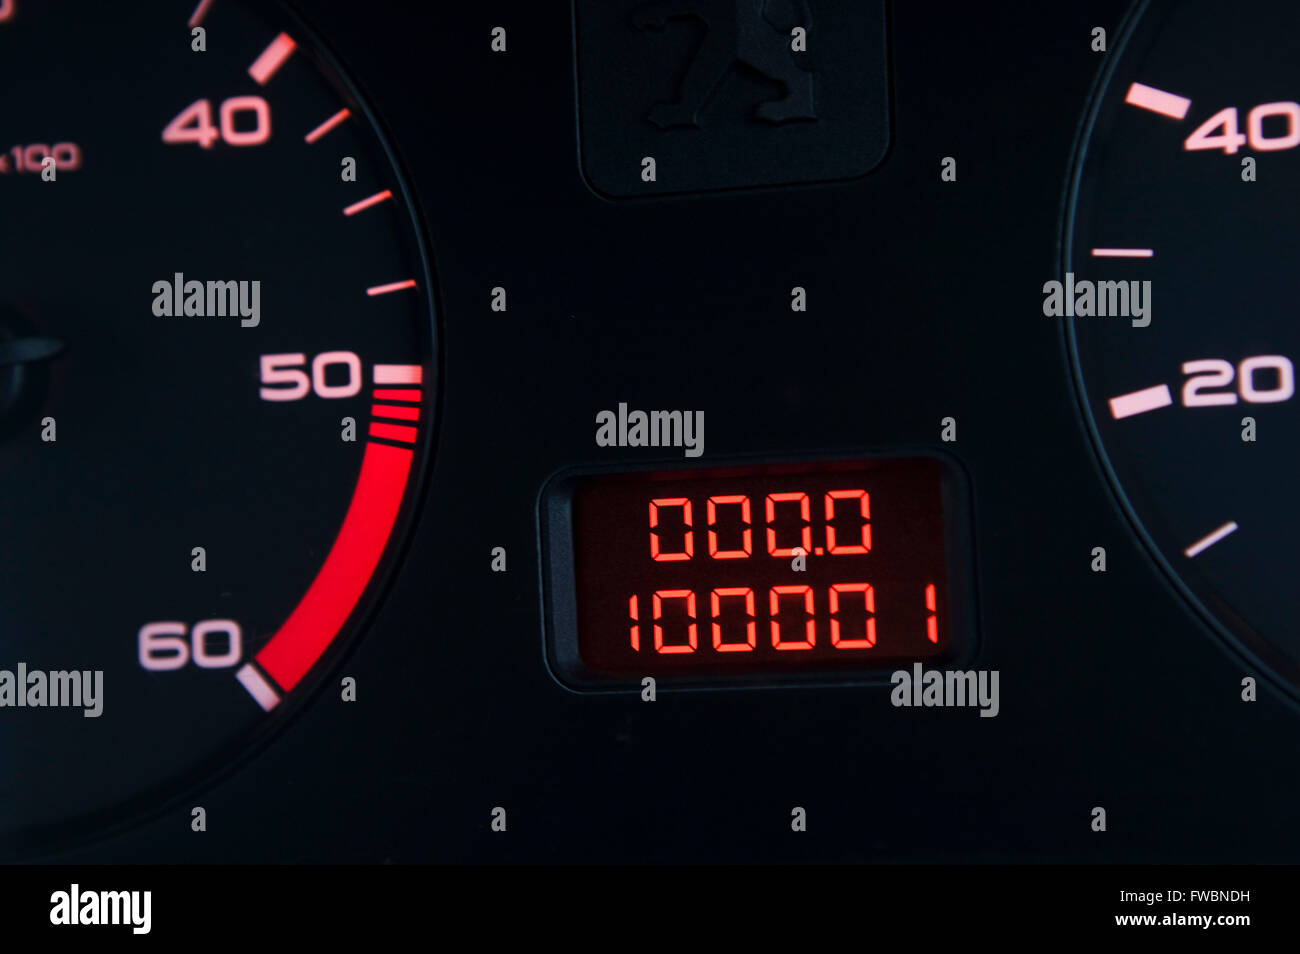 Una vettura dash board display che mostra che il veicolo ha appena percorsa oltre 100.000 (centomila chilometri) come mostrato bu tht massimo di 100,001 km sul contachilometri elettronico. Foto Stock